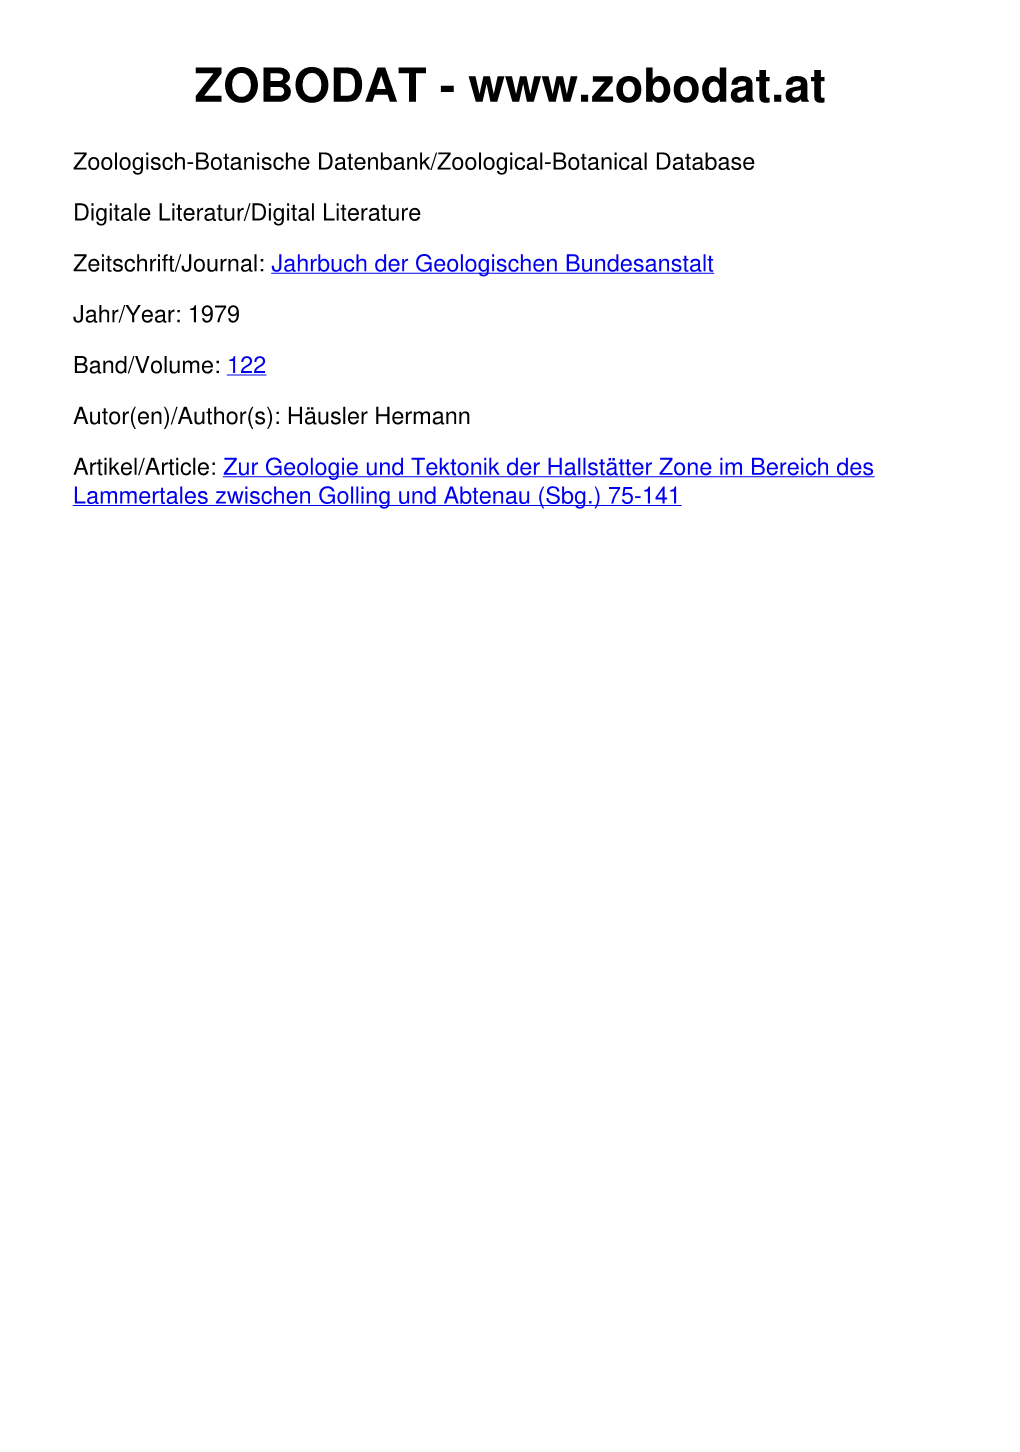 Zur Geologie Und Tektonik Der Hallstätter Zone Im Bereich Des Lammertales Zwischen Golling Und Abtenau (Sbg.) 75-141 ©Geol